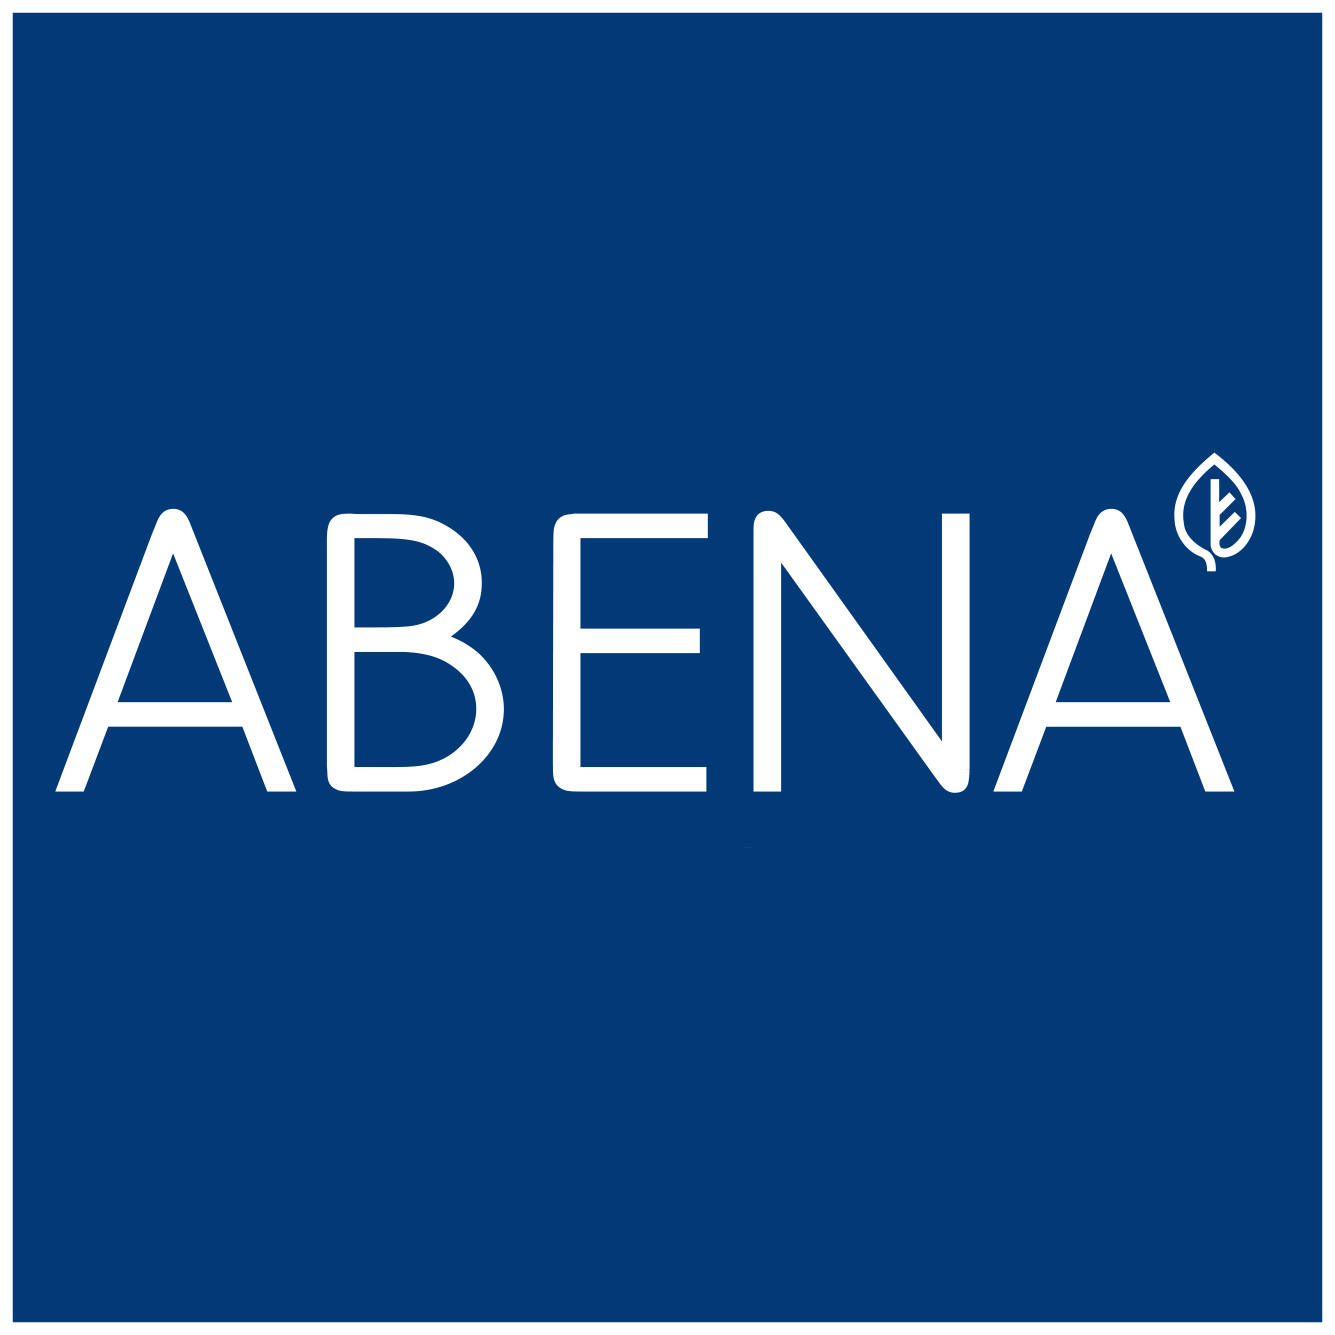 Abena logo1